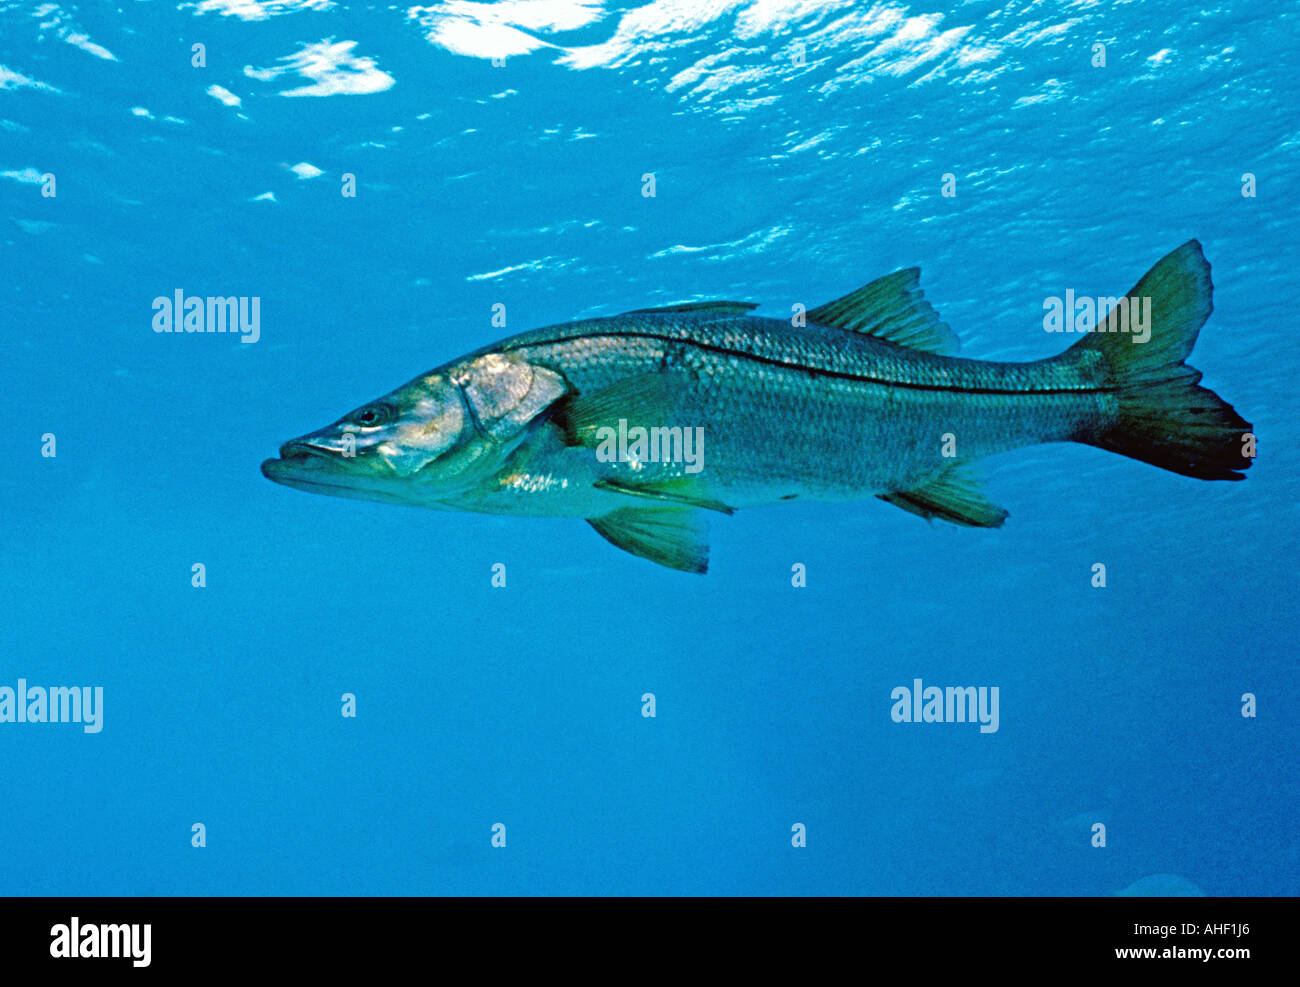 Fishing snook gamefish underwater Stock Photo